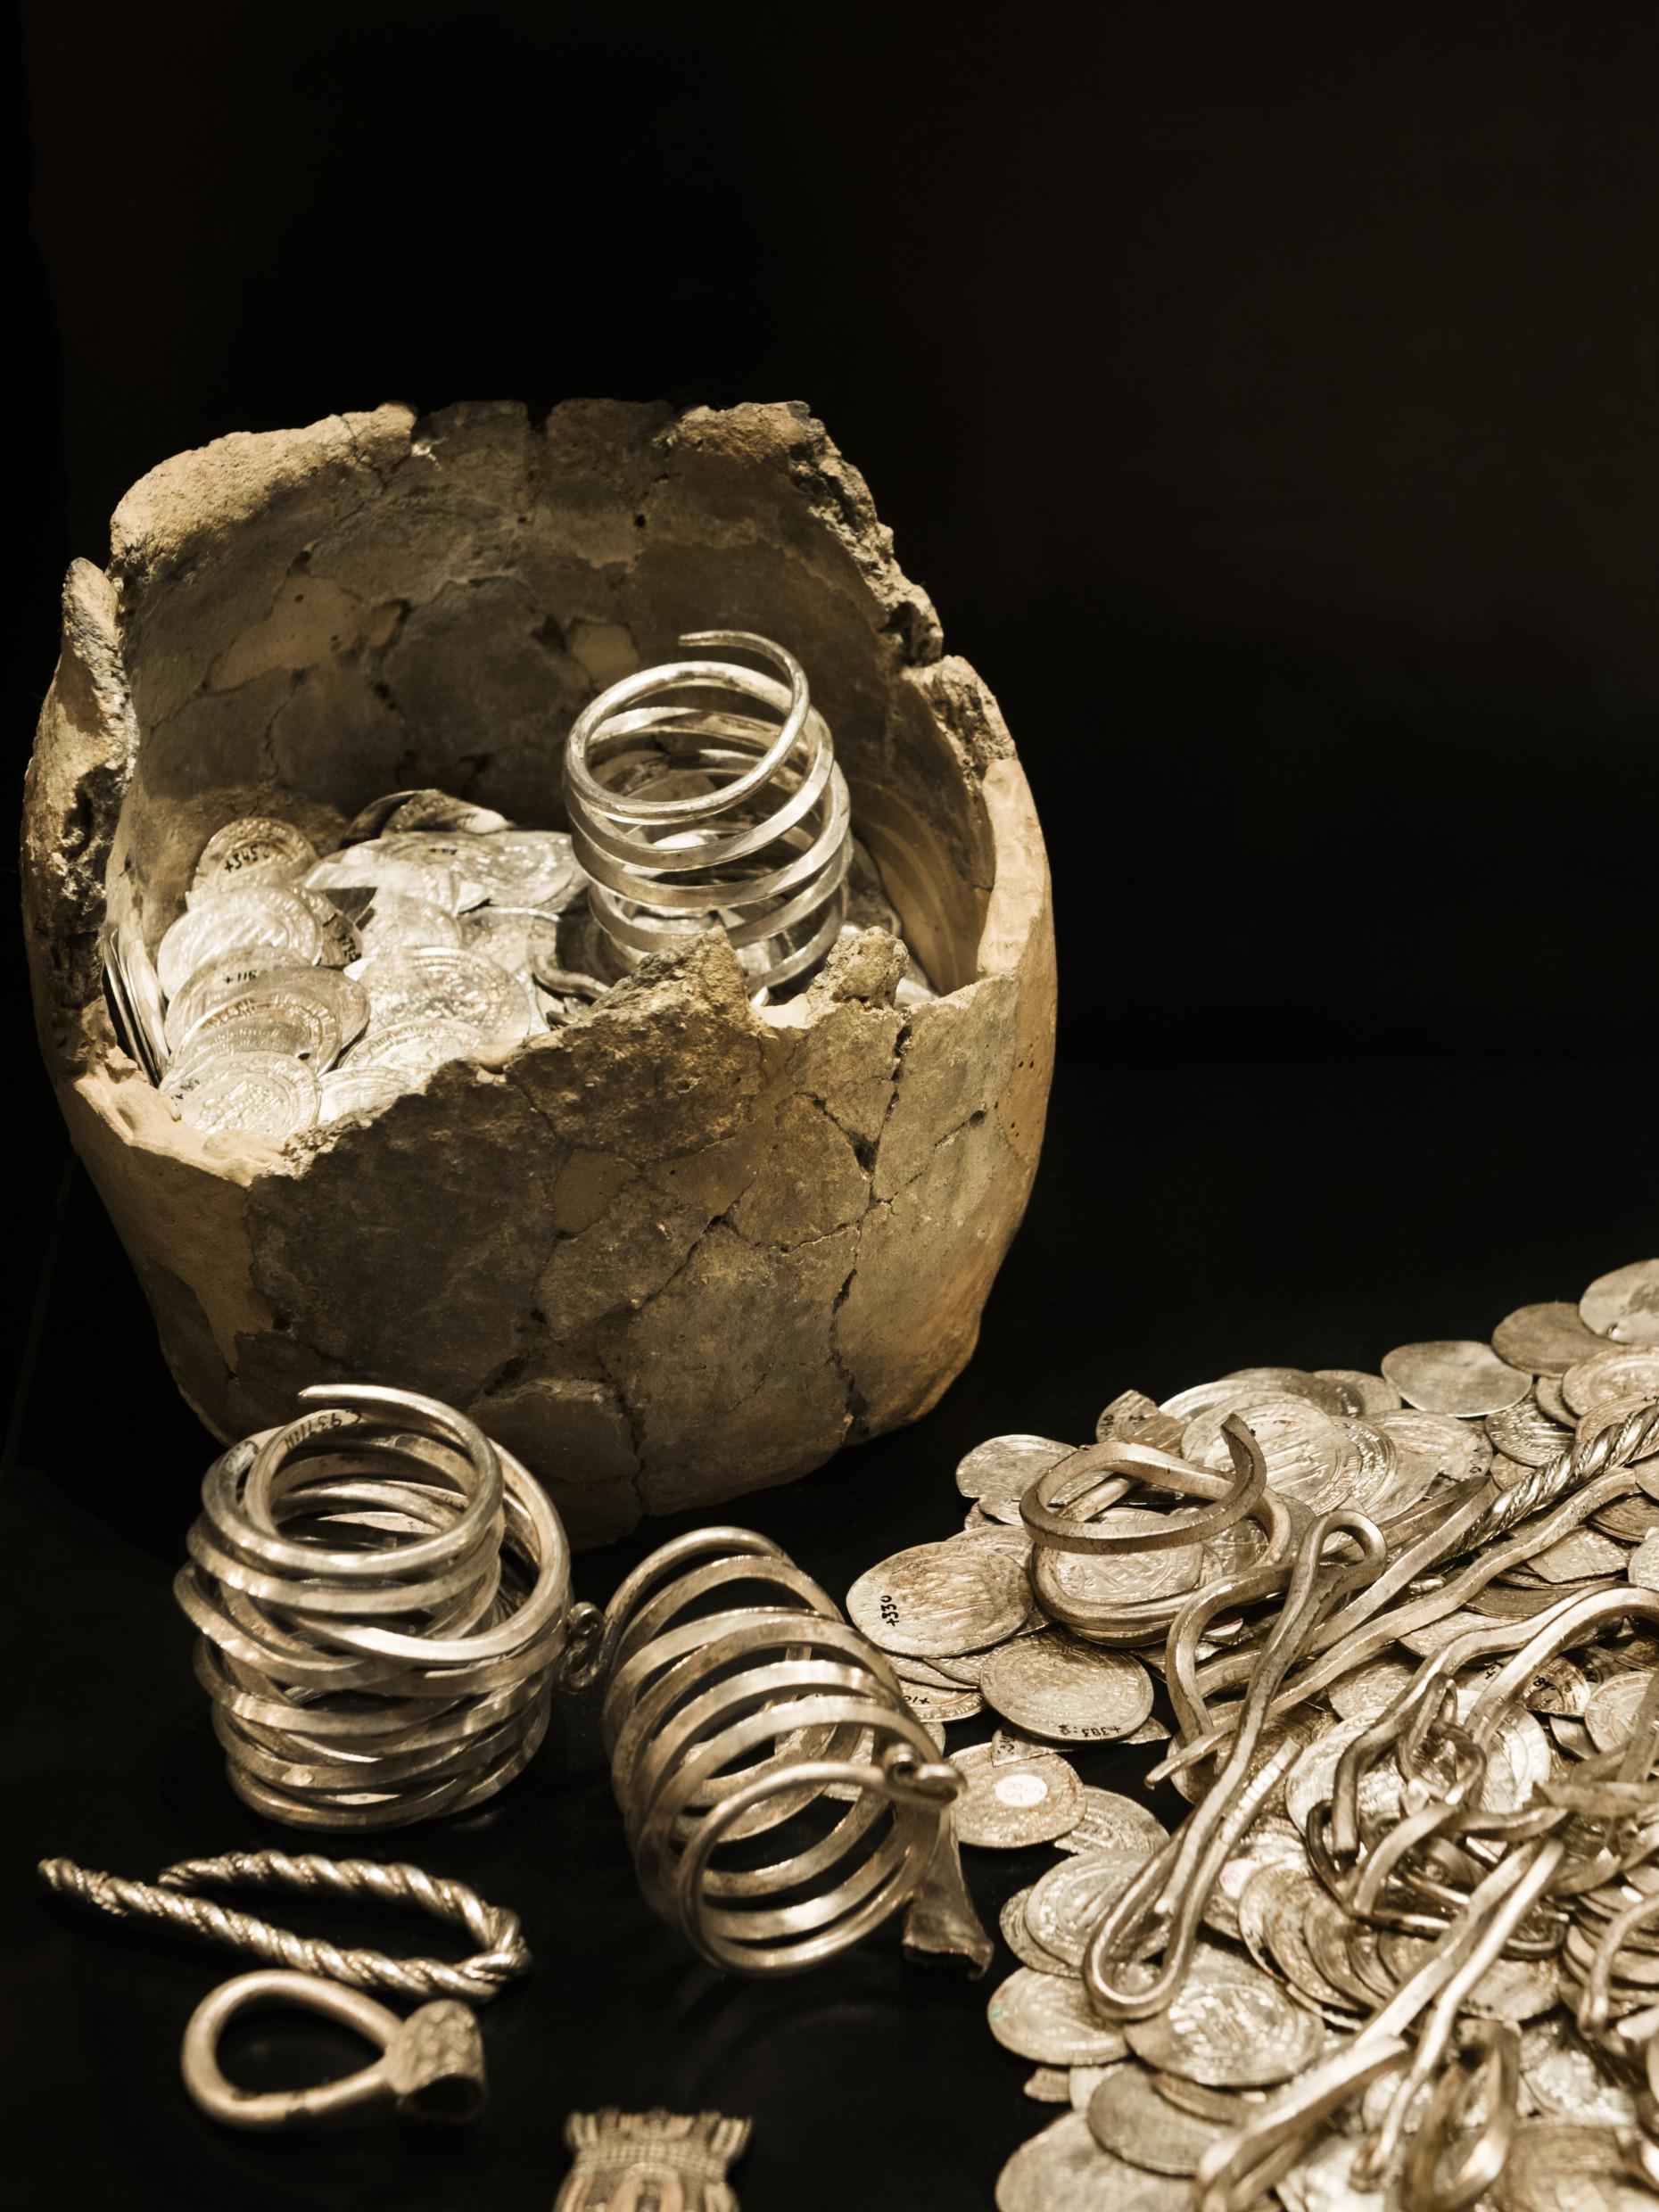 D'anciennes pièces en or et en argent et des bijoux sont posés sur une surface noire.